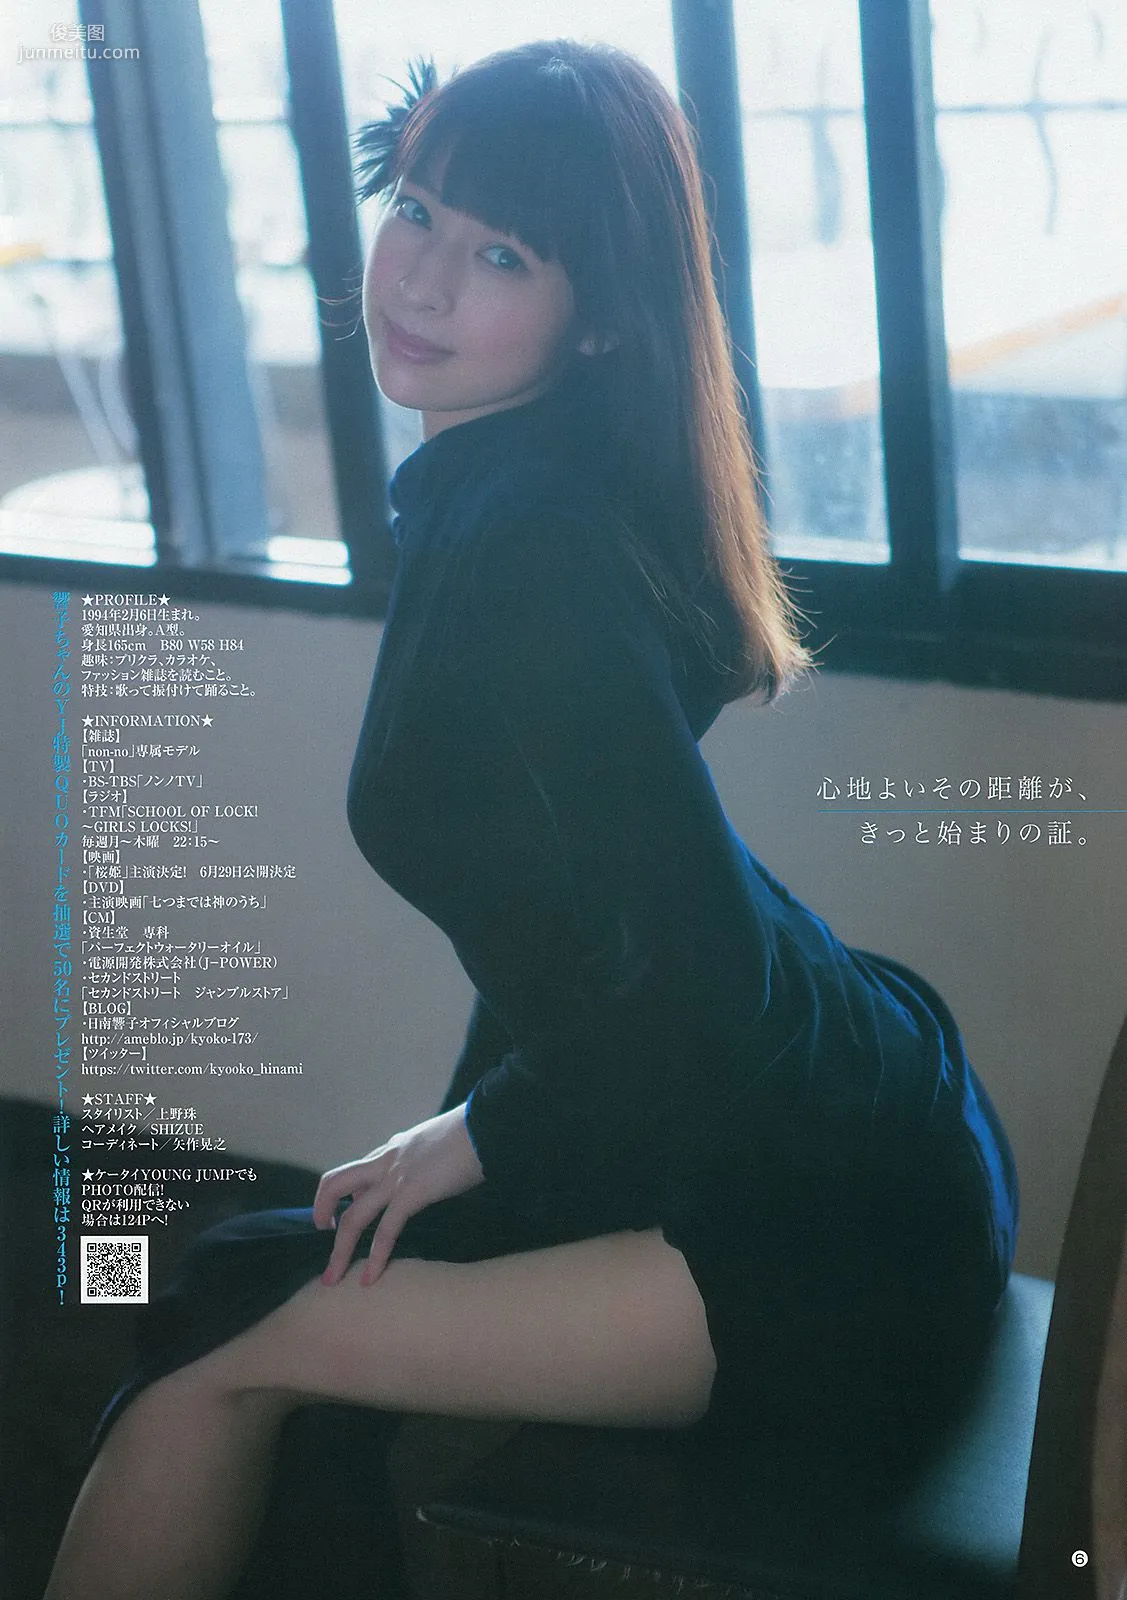 日南響子 中村静香 ギャルコン準グランプリガールズ [Weekly Young Jump] 2013年No.19 写真杂志7